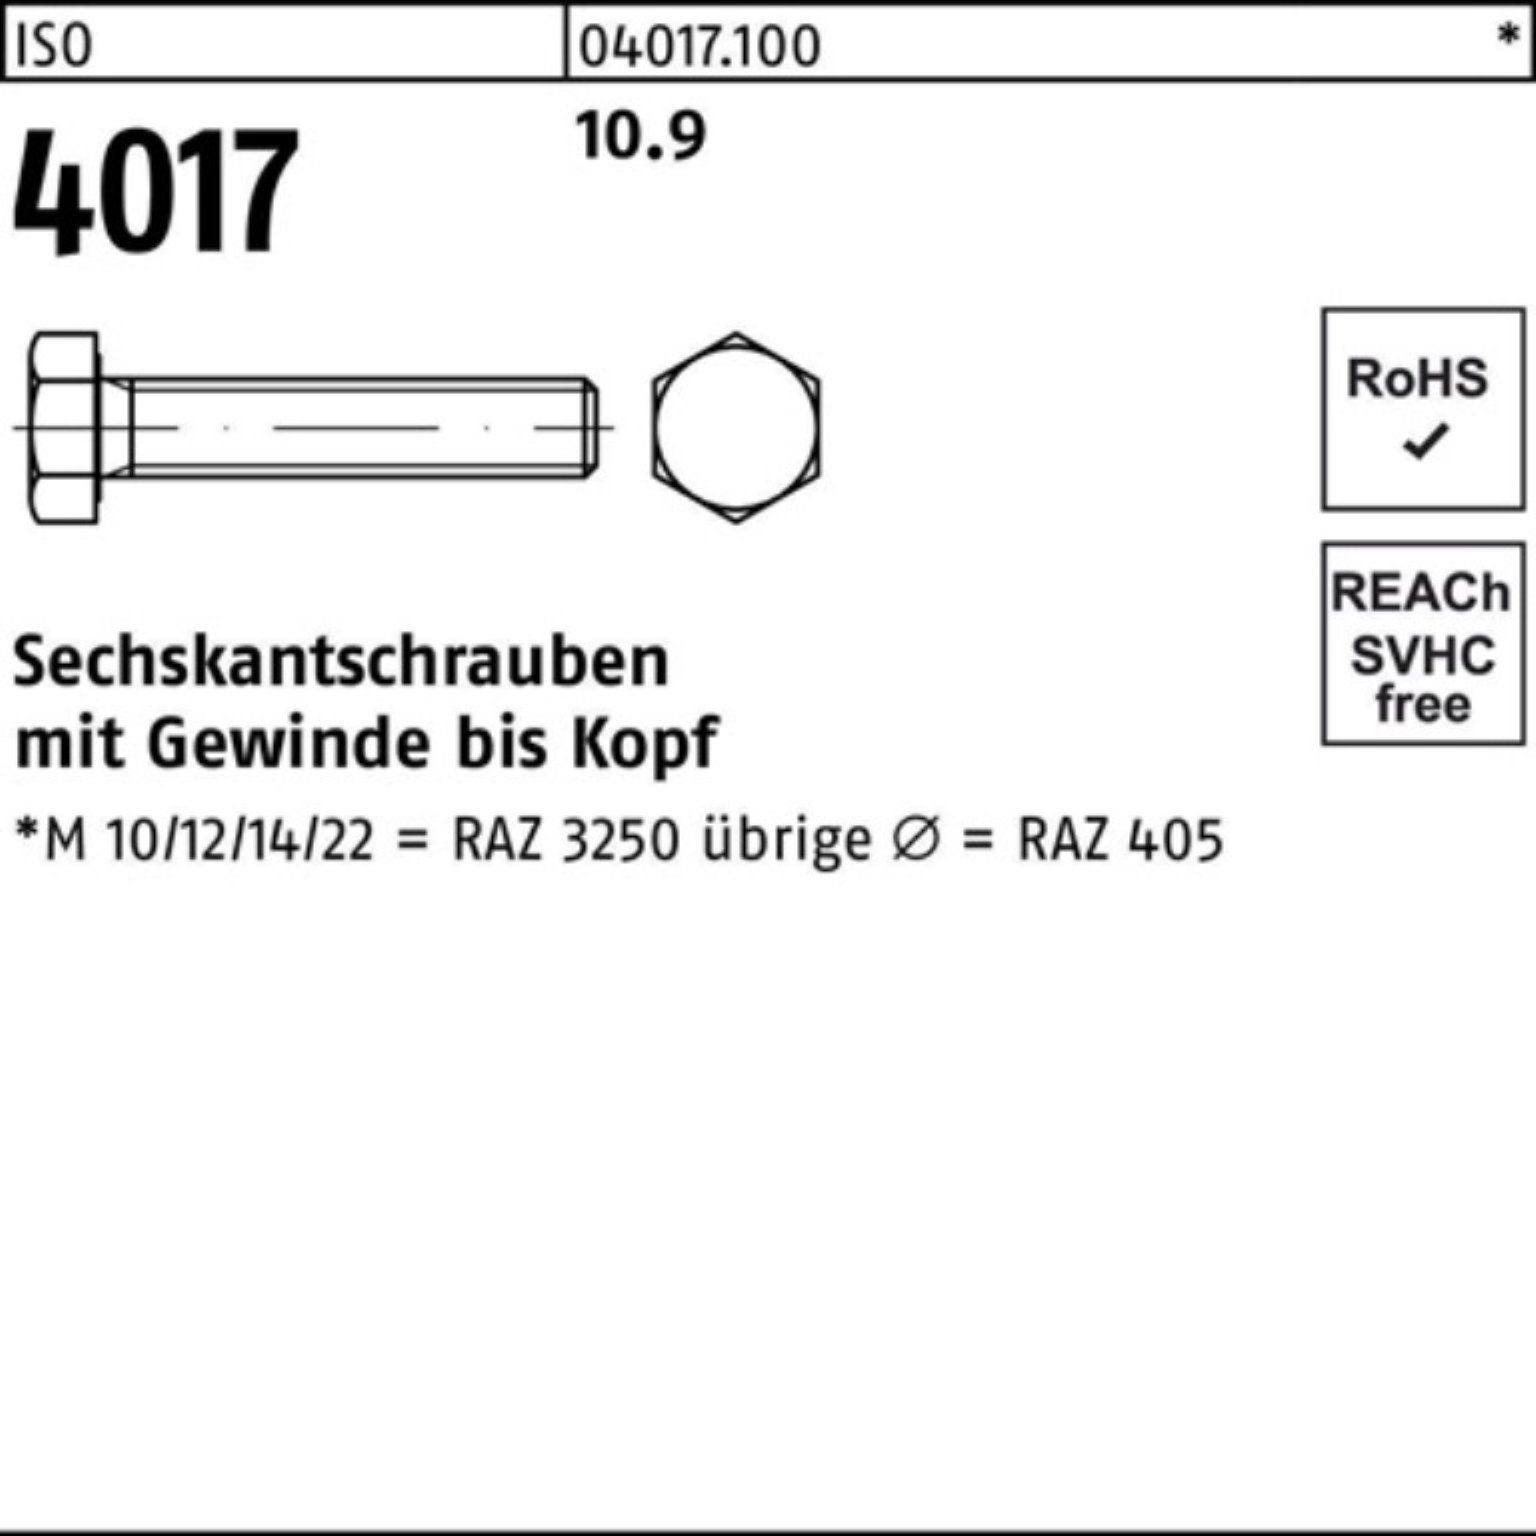 Bufab Sechskantschraube 100er M24x 1 4017 10.9 ISO VG 40 170 ISO Stück Sechskantschraube Pack